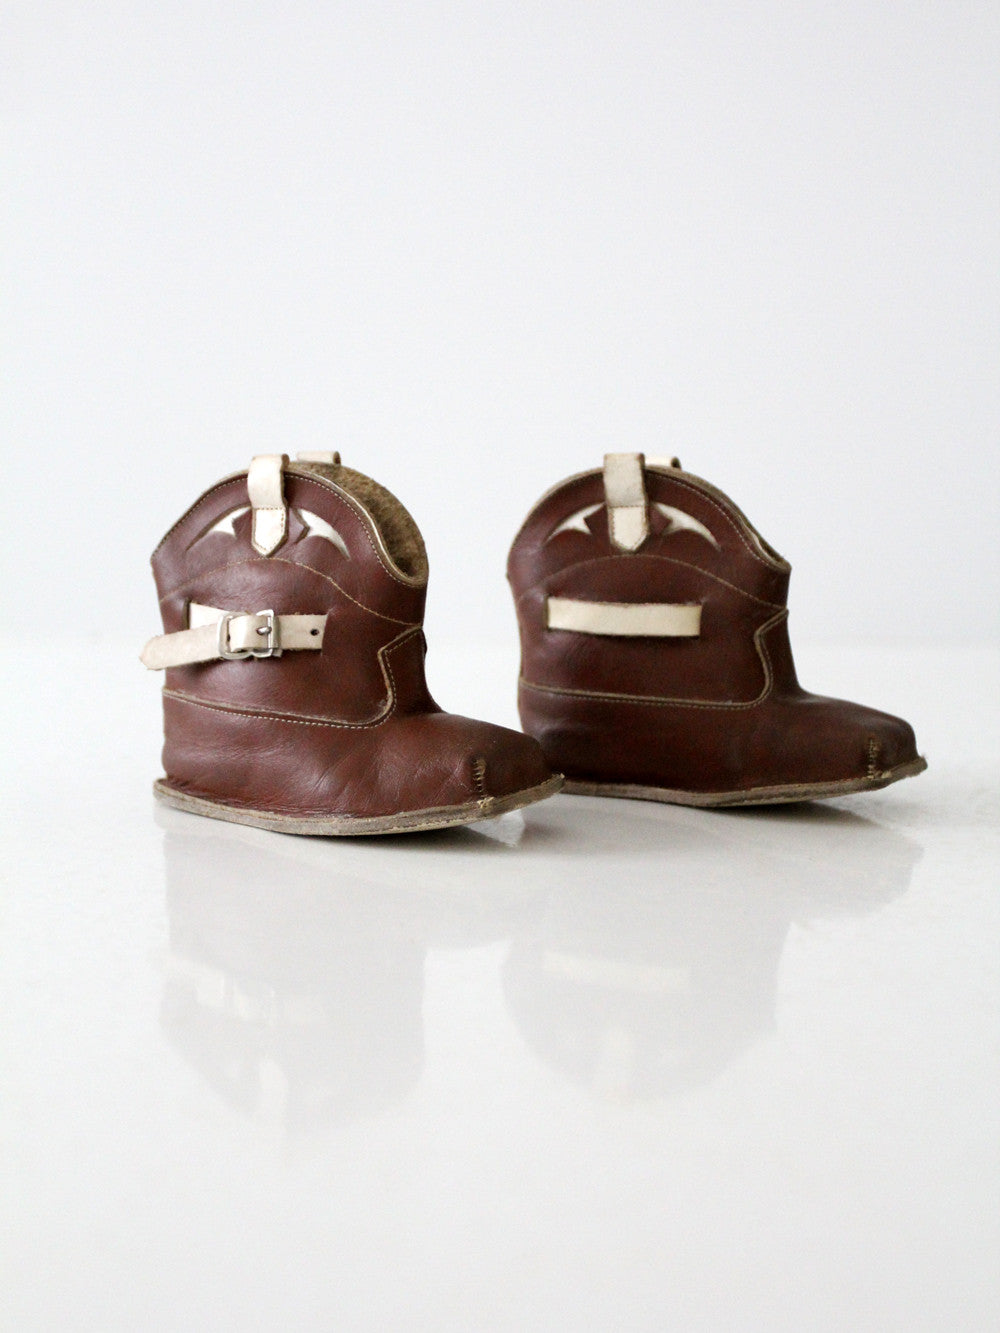 vintage baby cowboy boots